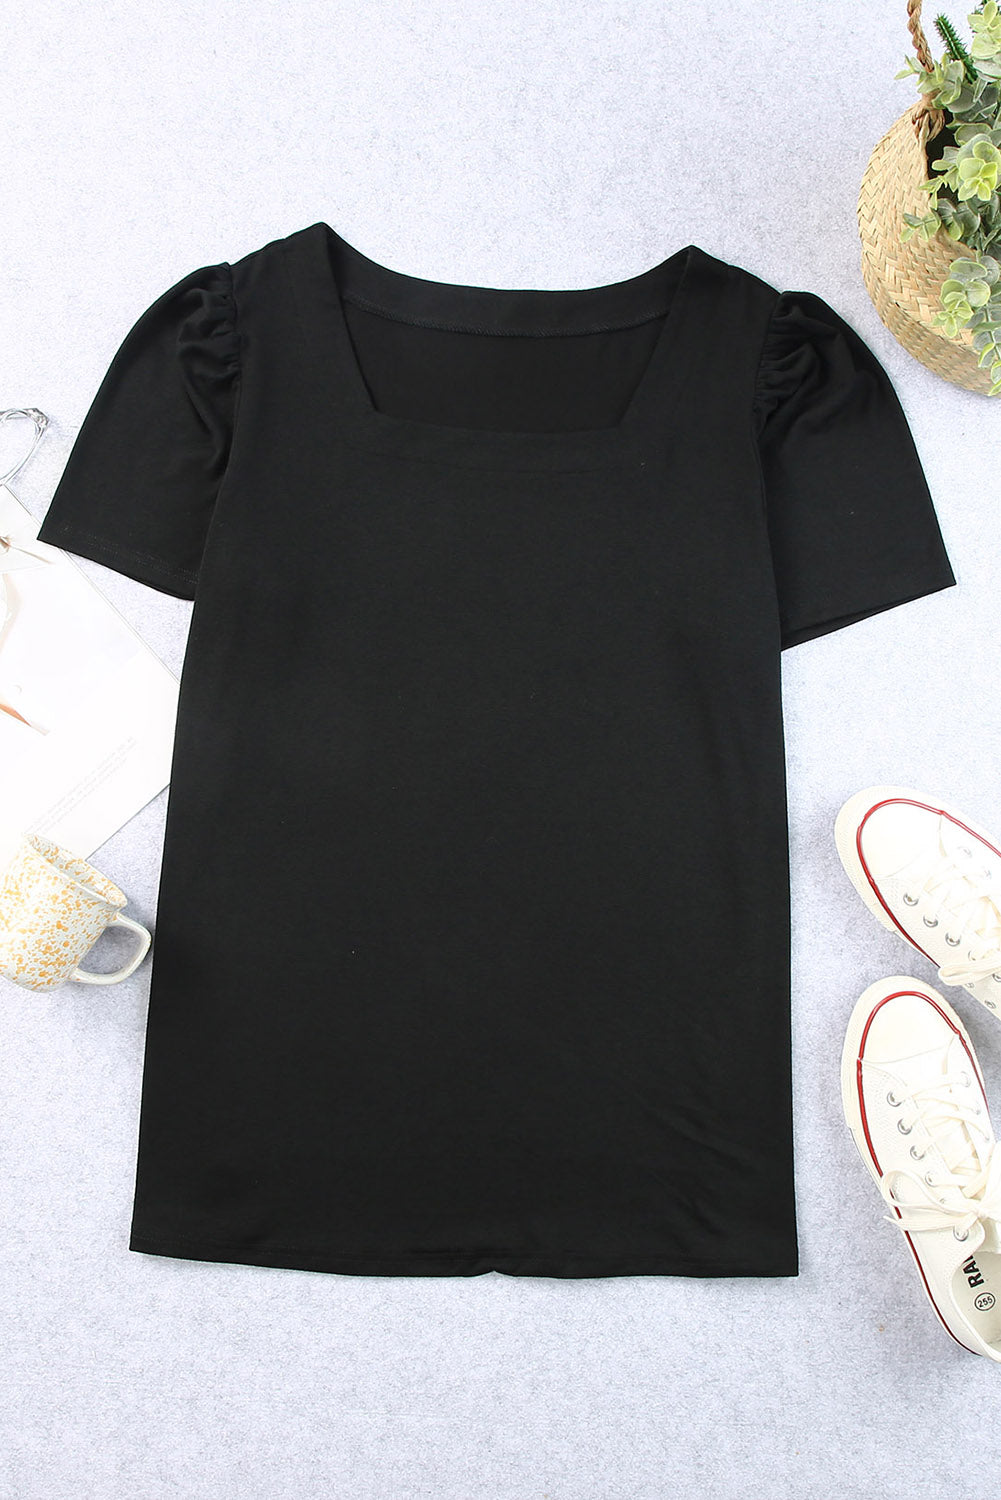 Crna majica s kratkim rukavima s četvrtastim ovratnikom i naborima na ramenima veće veličine